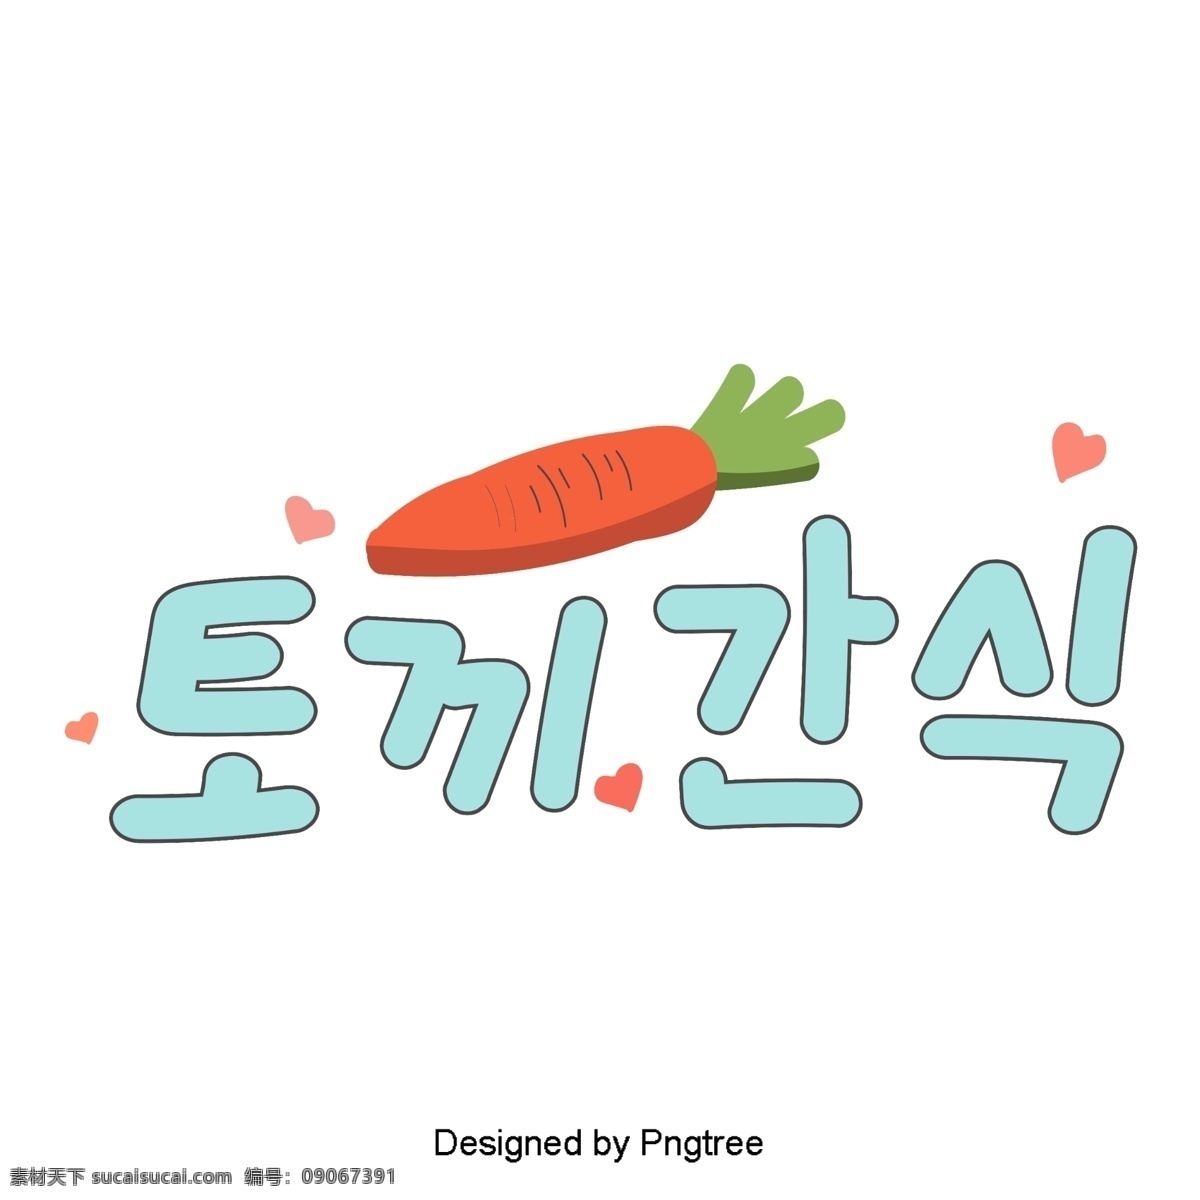 韩国 卡通 风格 浅蓝色 字体 兔 心 元素 字形 甜茶 ai材料 贴纸 动画片 可爱 分子 样式 宠物 浅蓝 萝卜 兔子食物